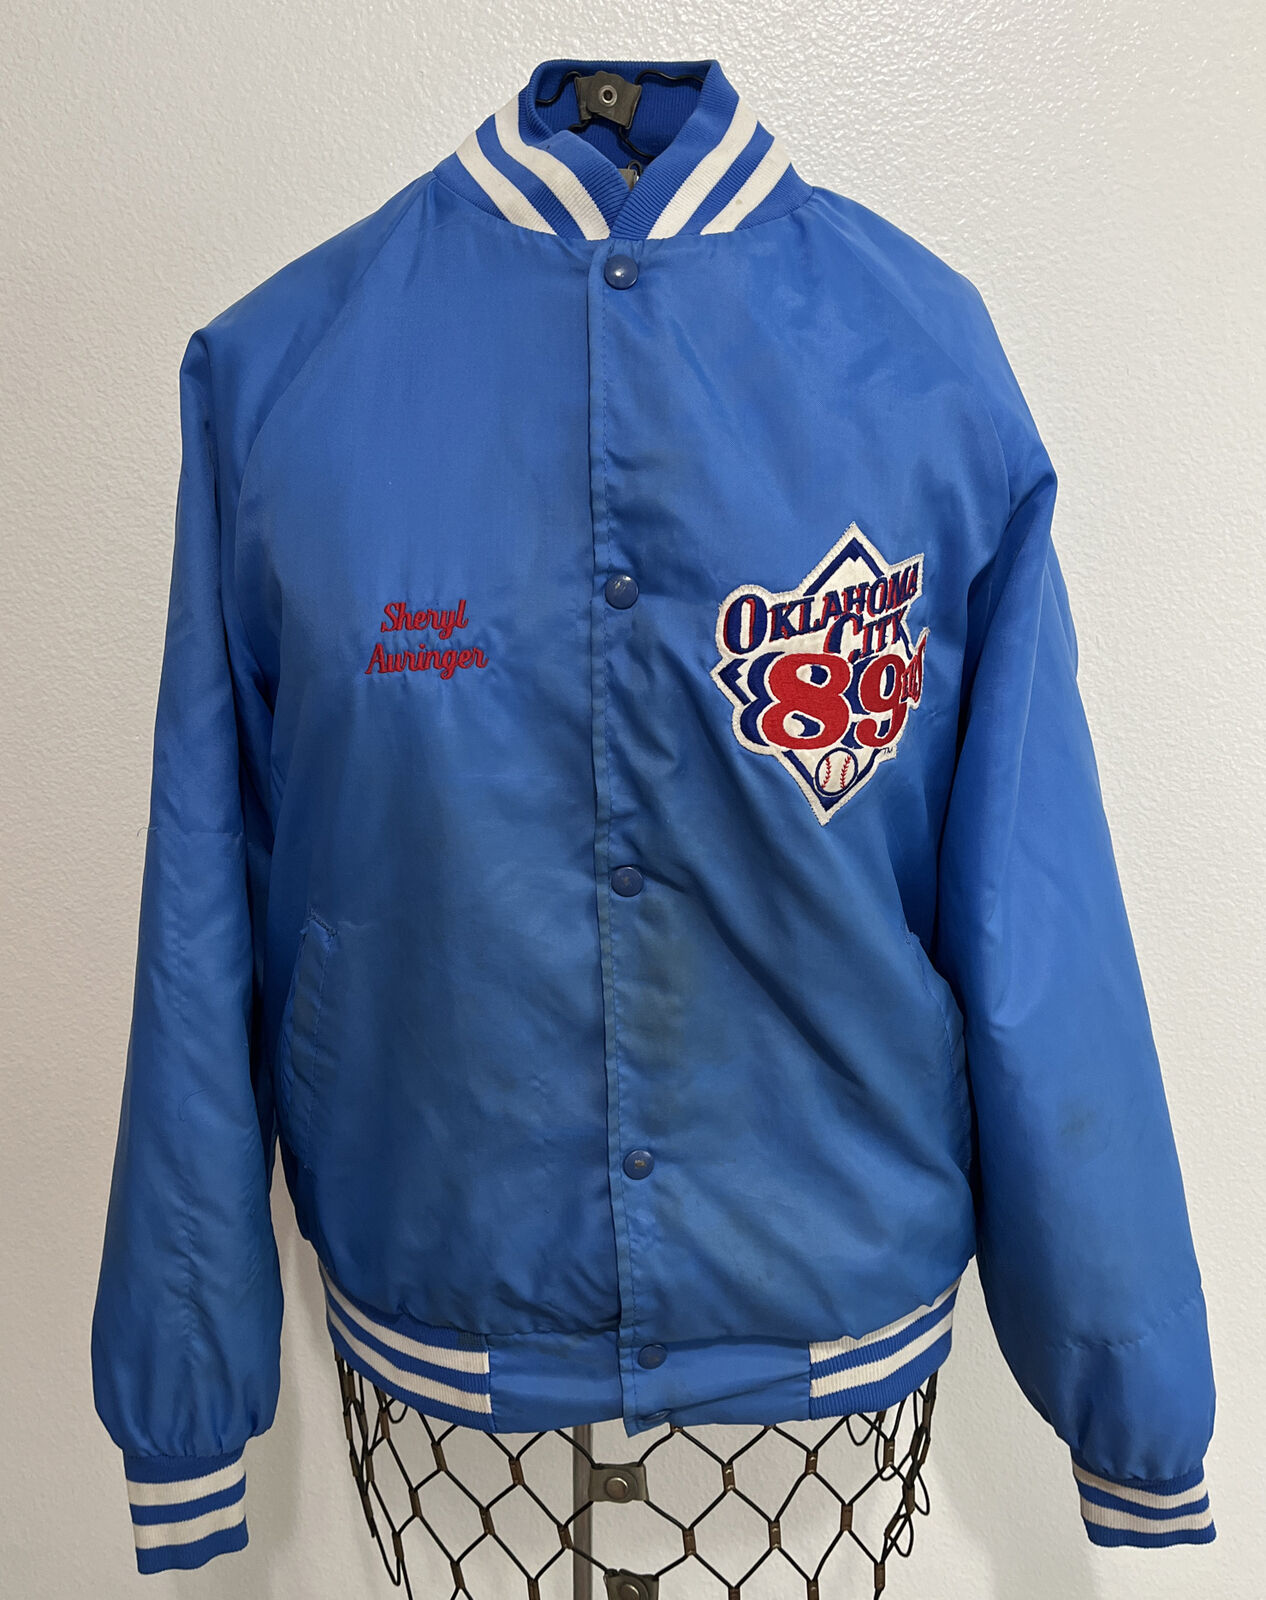 Vintage Oklahoma City Industry No. 1 89ers Cheap bargain jacket baseball warmup.